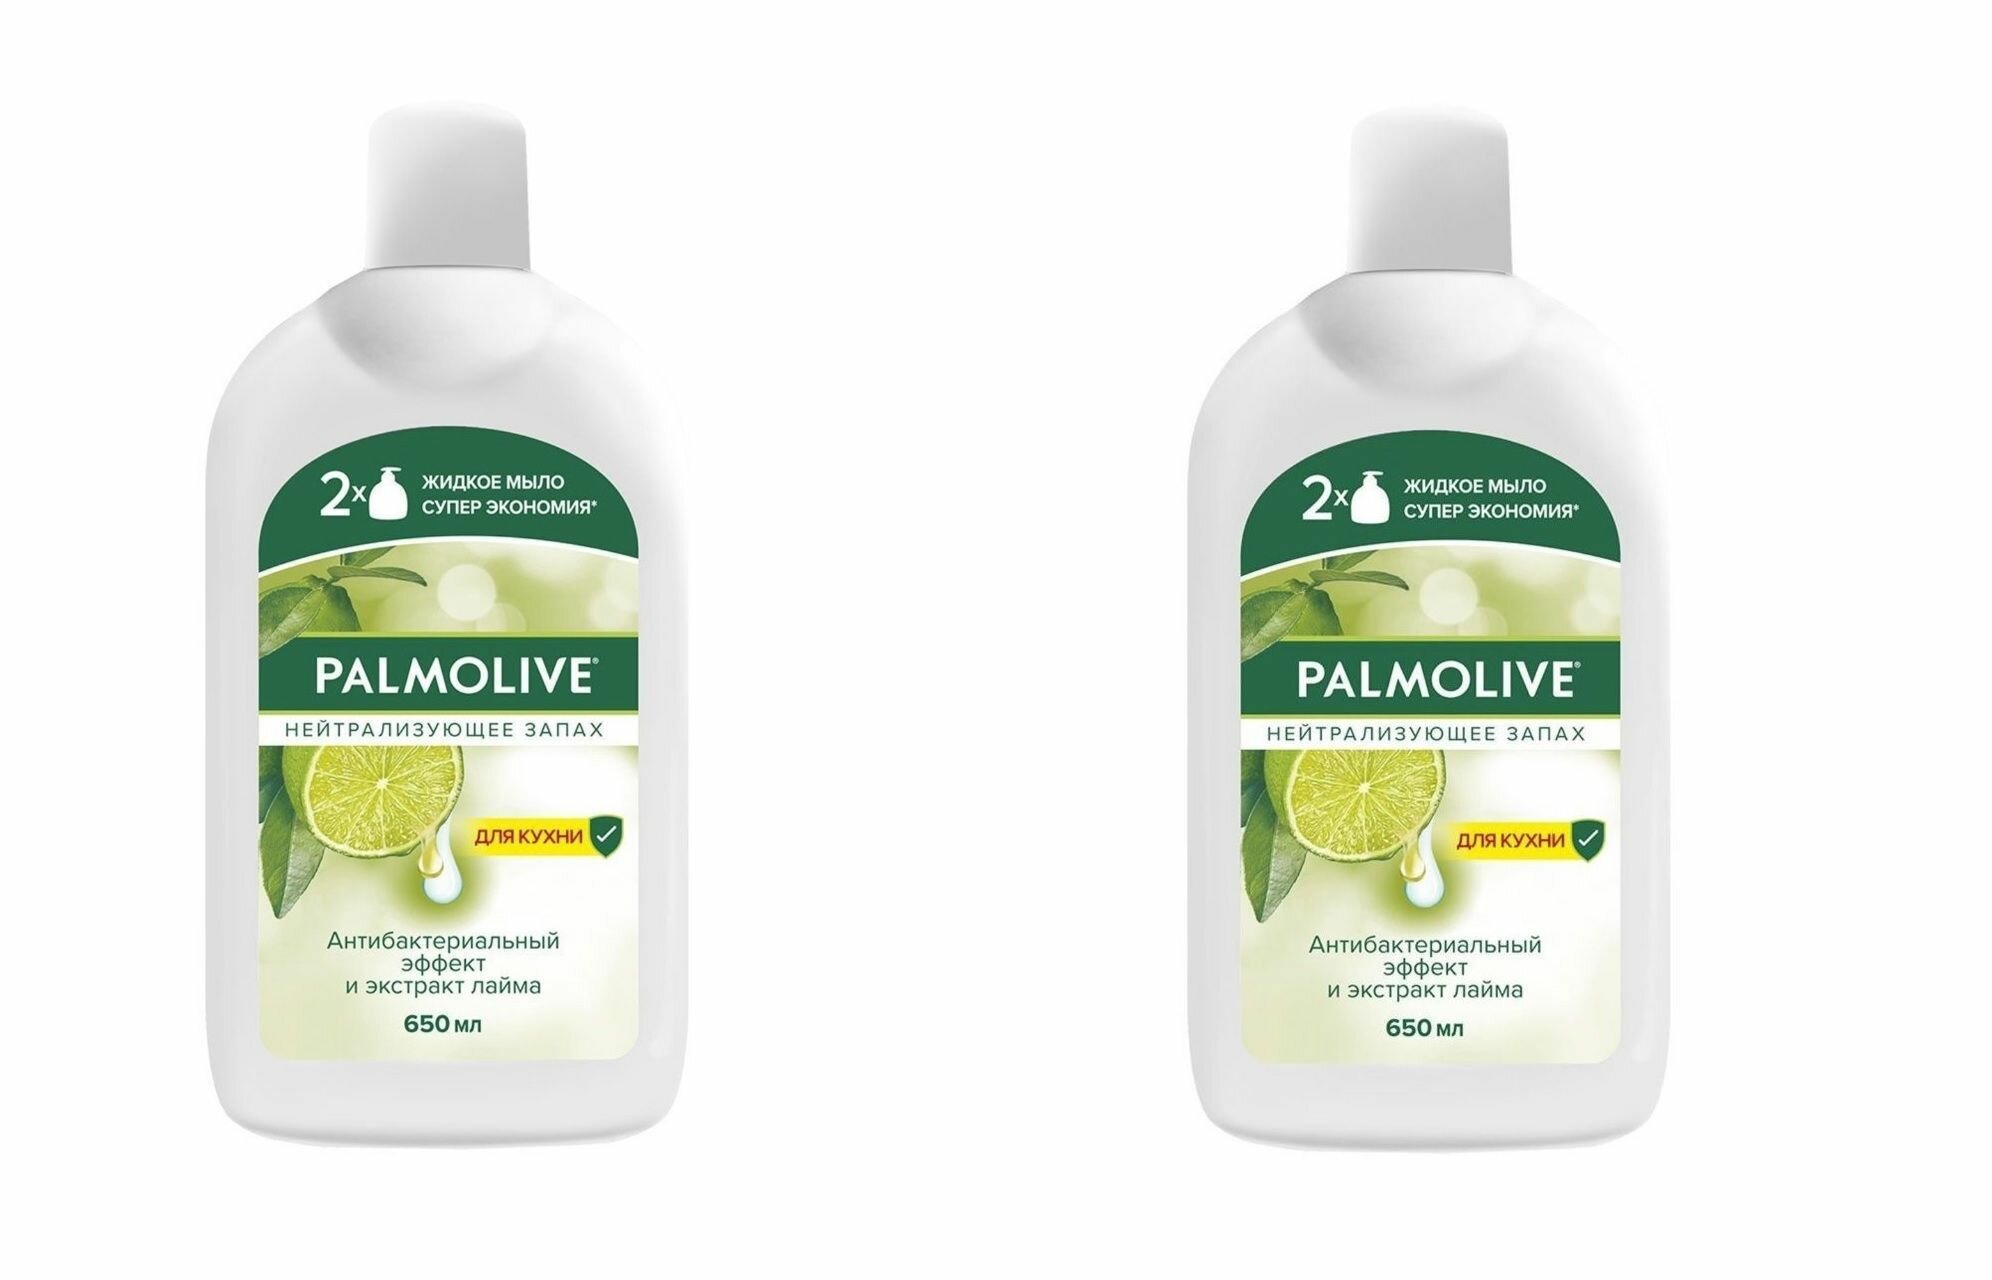 Palmolive жидкое мыло нейтрализующее запах 650мл, 2 шт